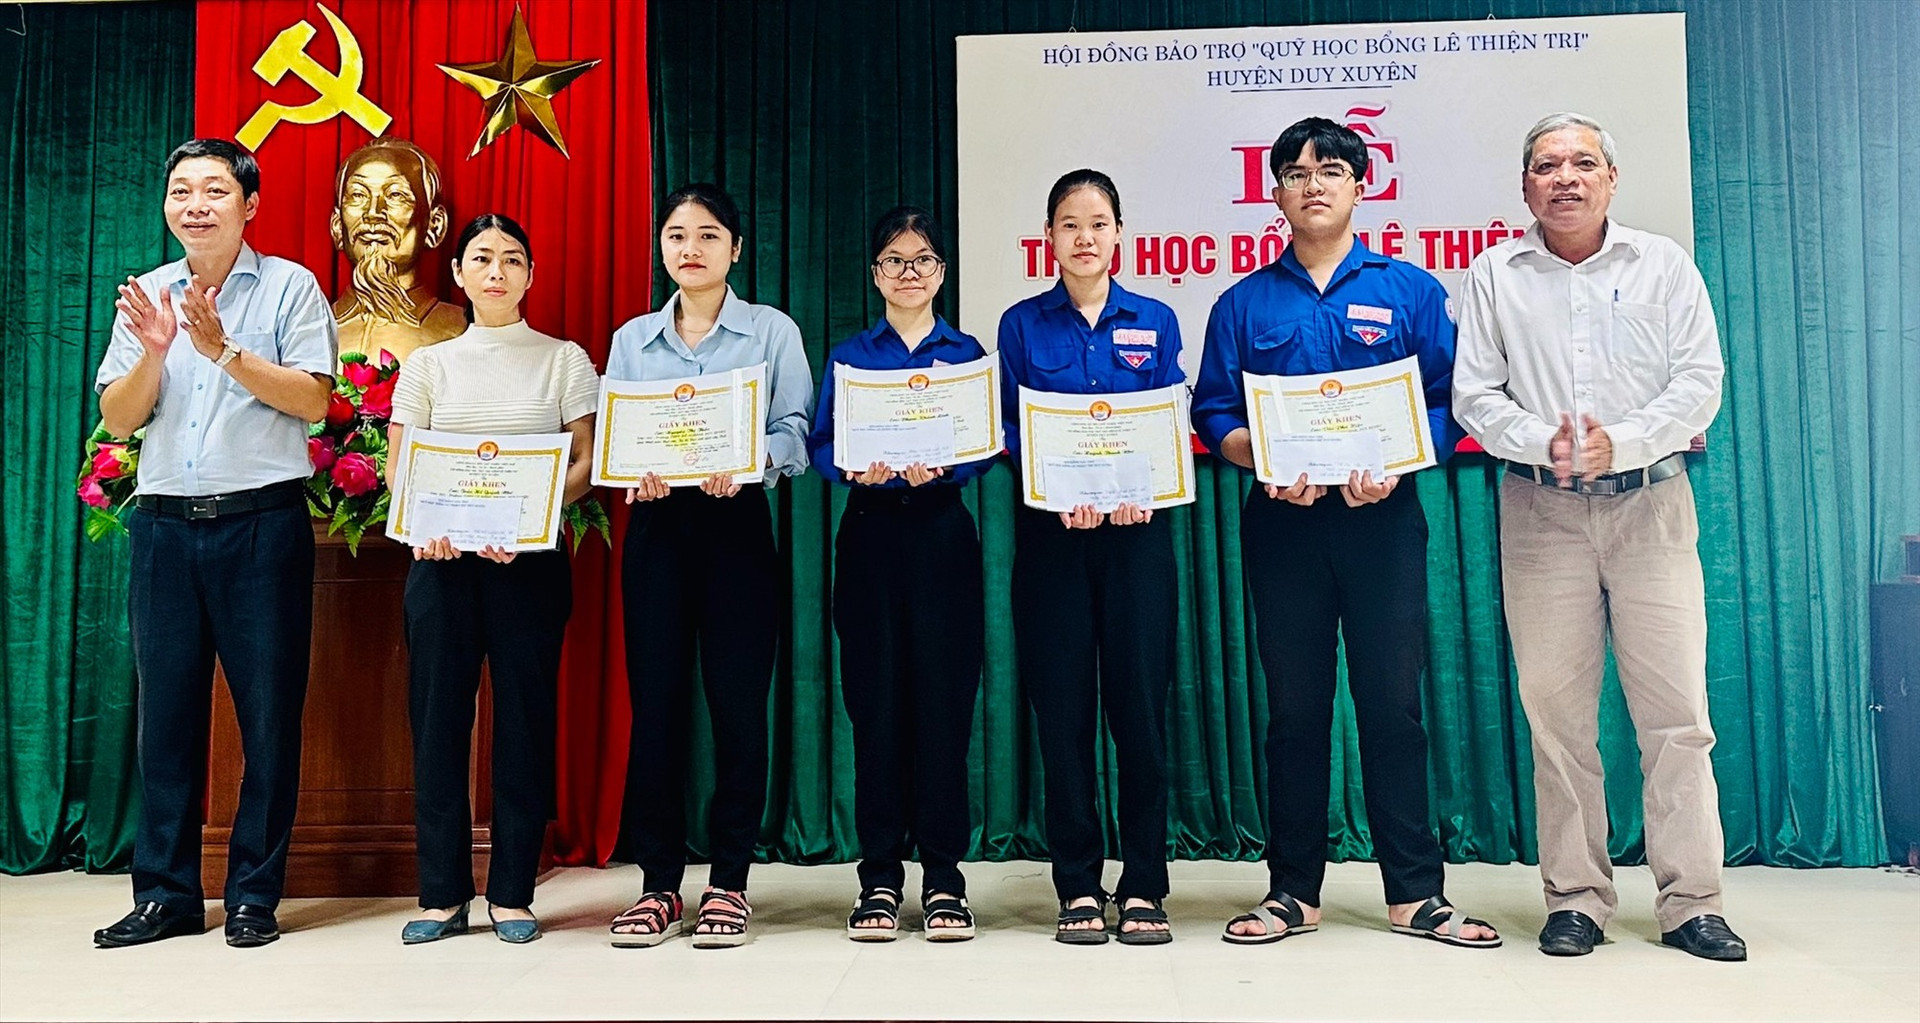 Hội đồng bảo trợ quỹ Học bổng Lê Thiện Trị huyện Duy Xuyên trao học bổng hàng năm cho các em học sinh đạt thành tích cao trong học tập.